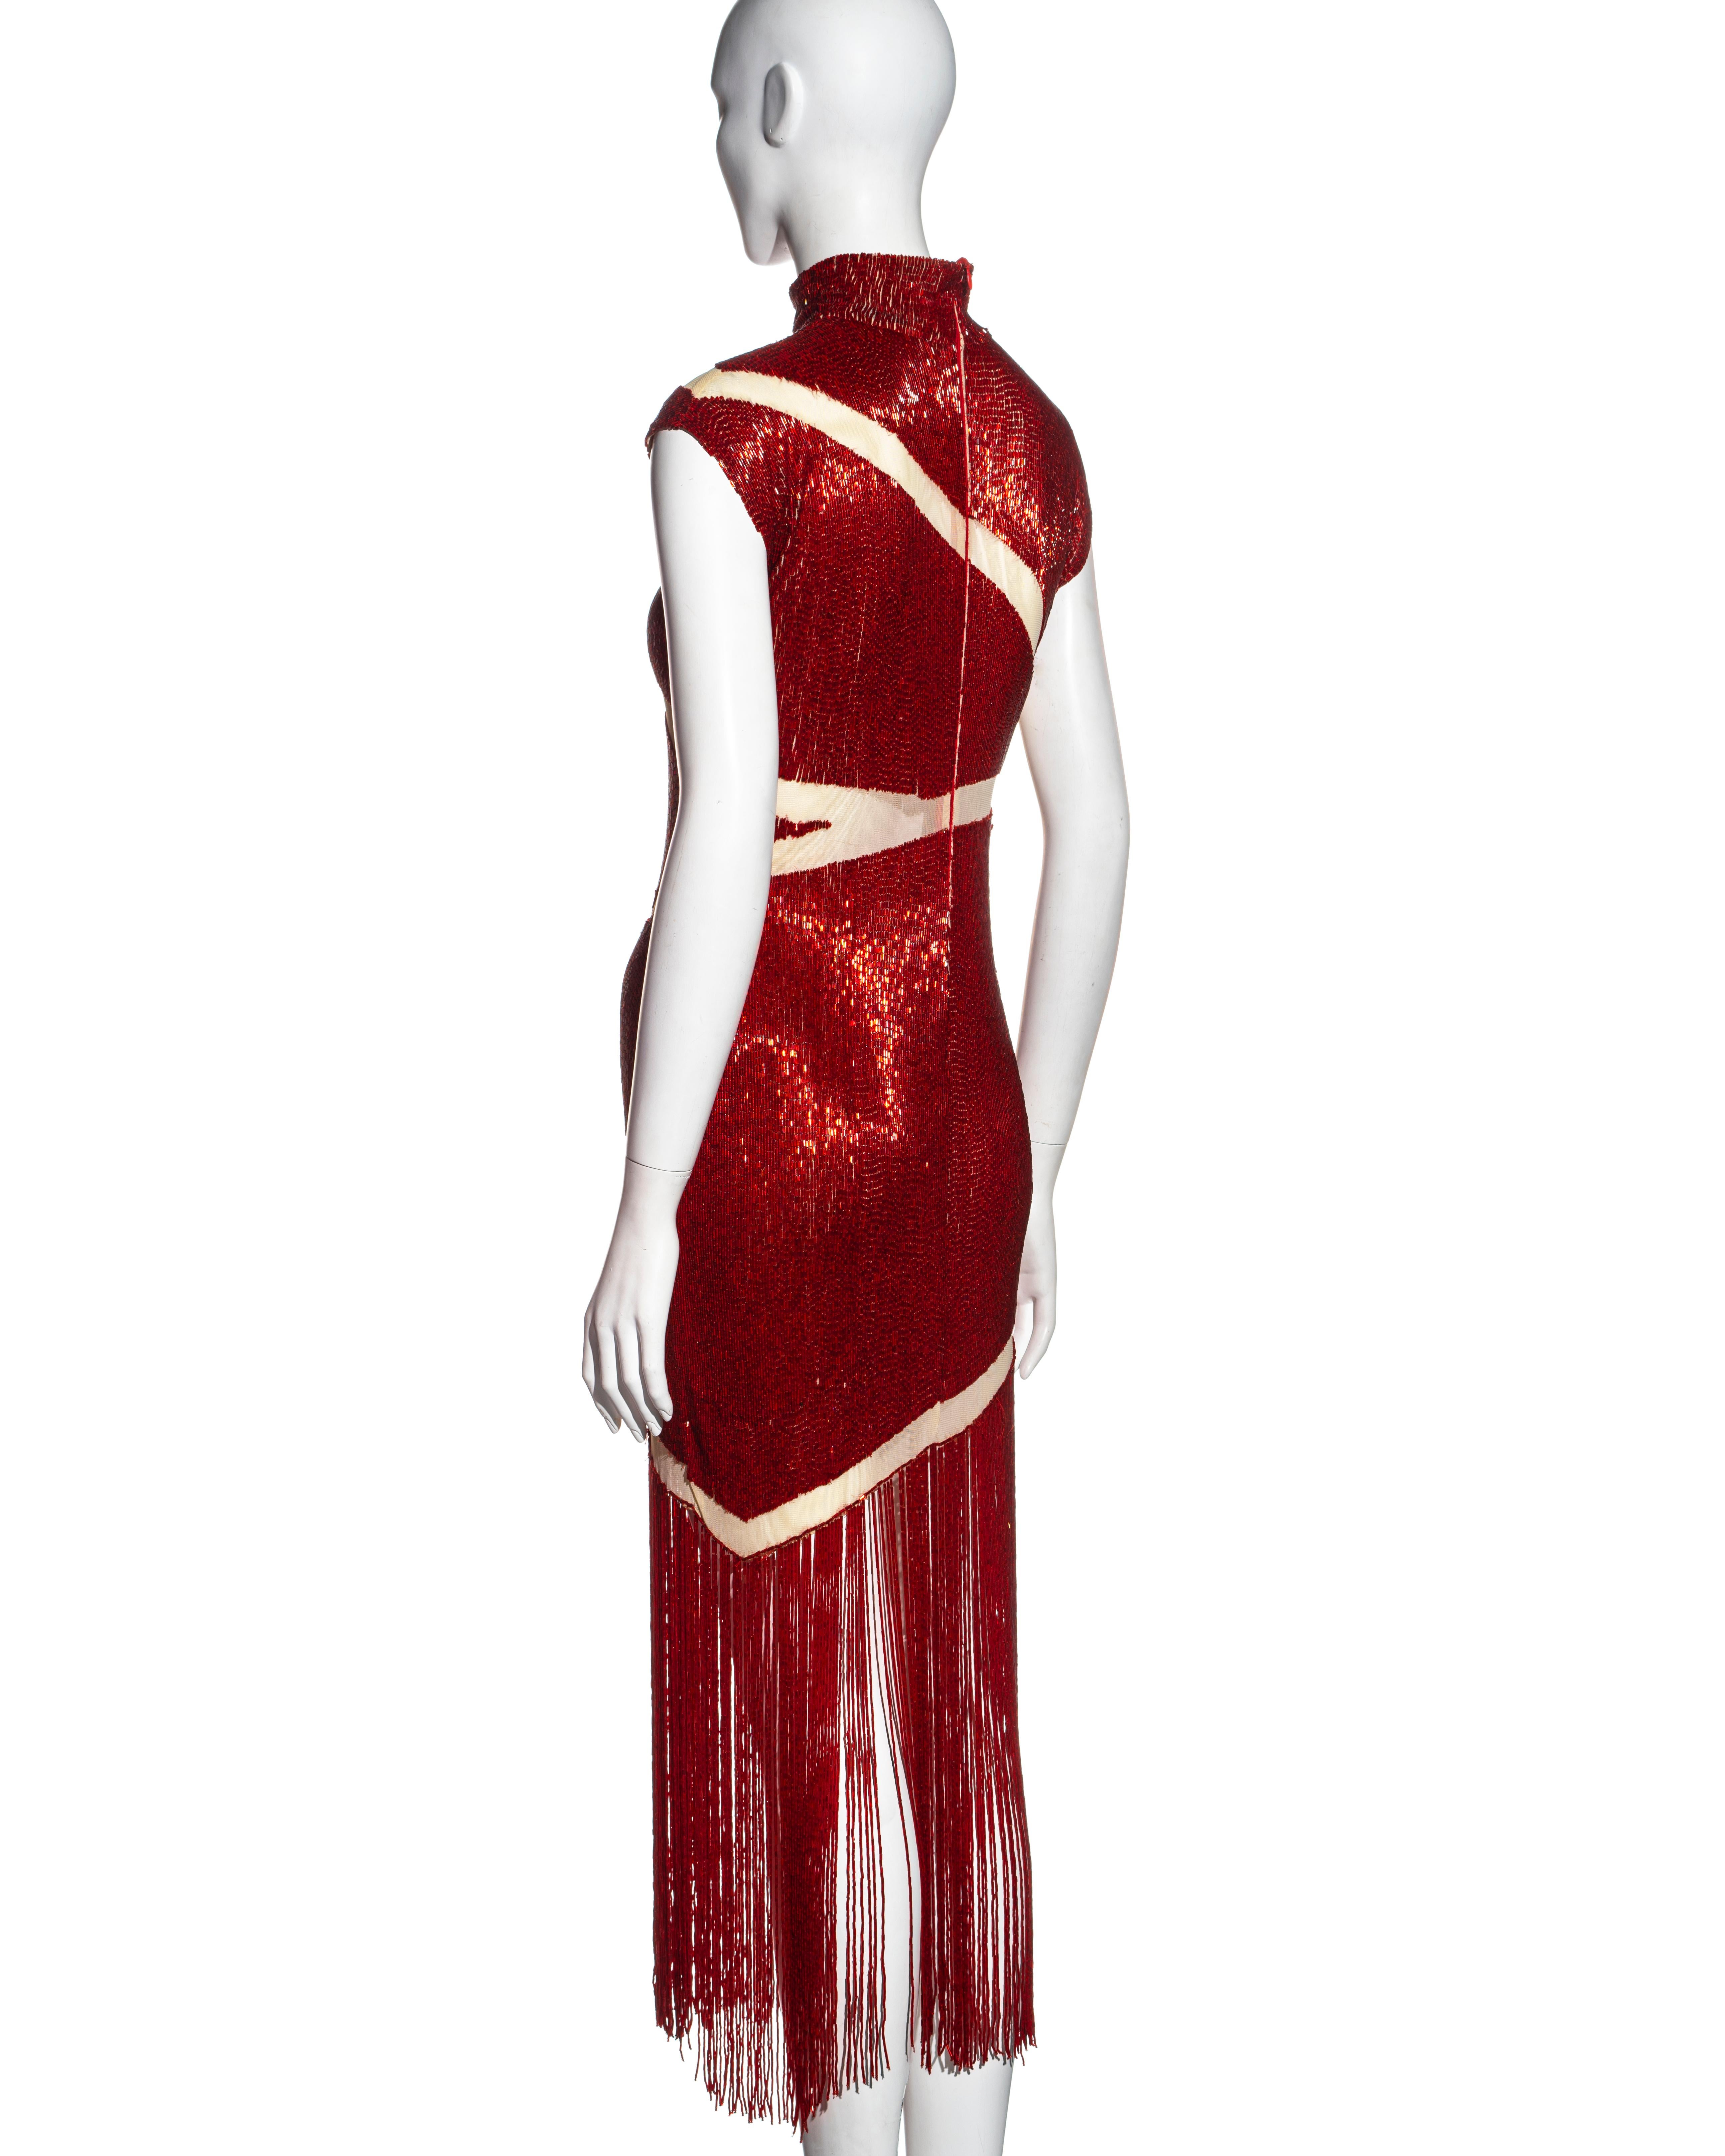 Alexander McQueen red beaded 'Joan' dress, fw 1998 1